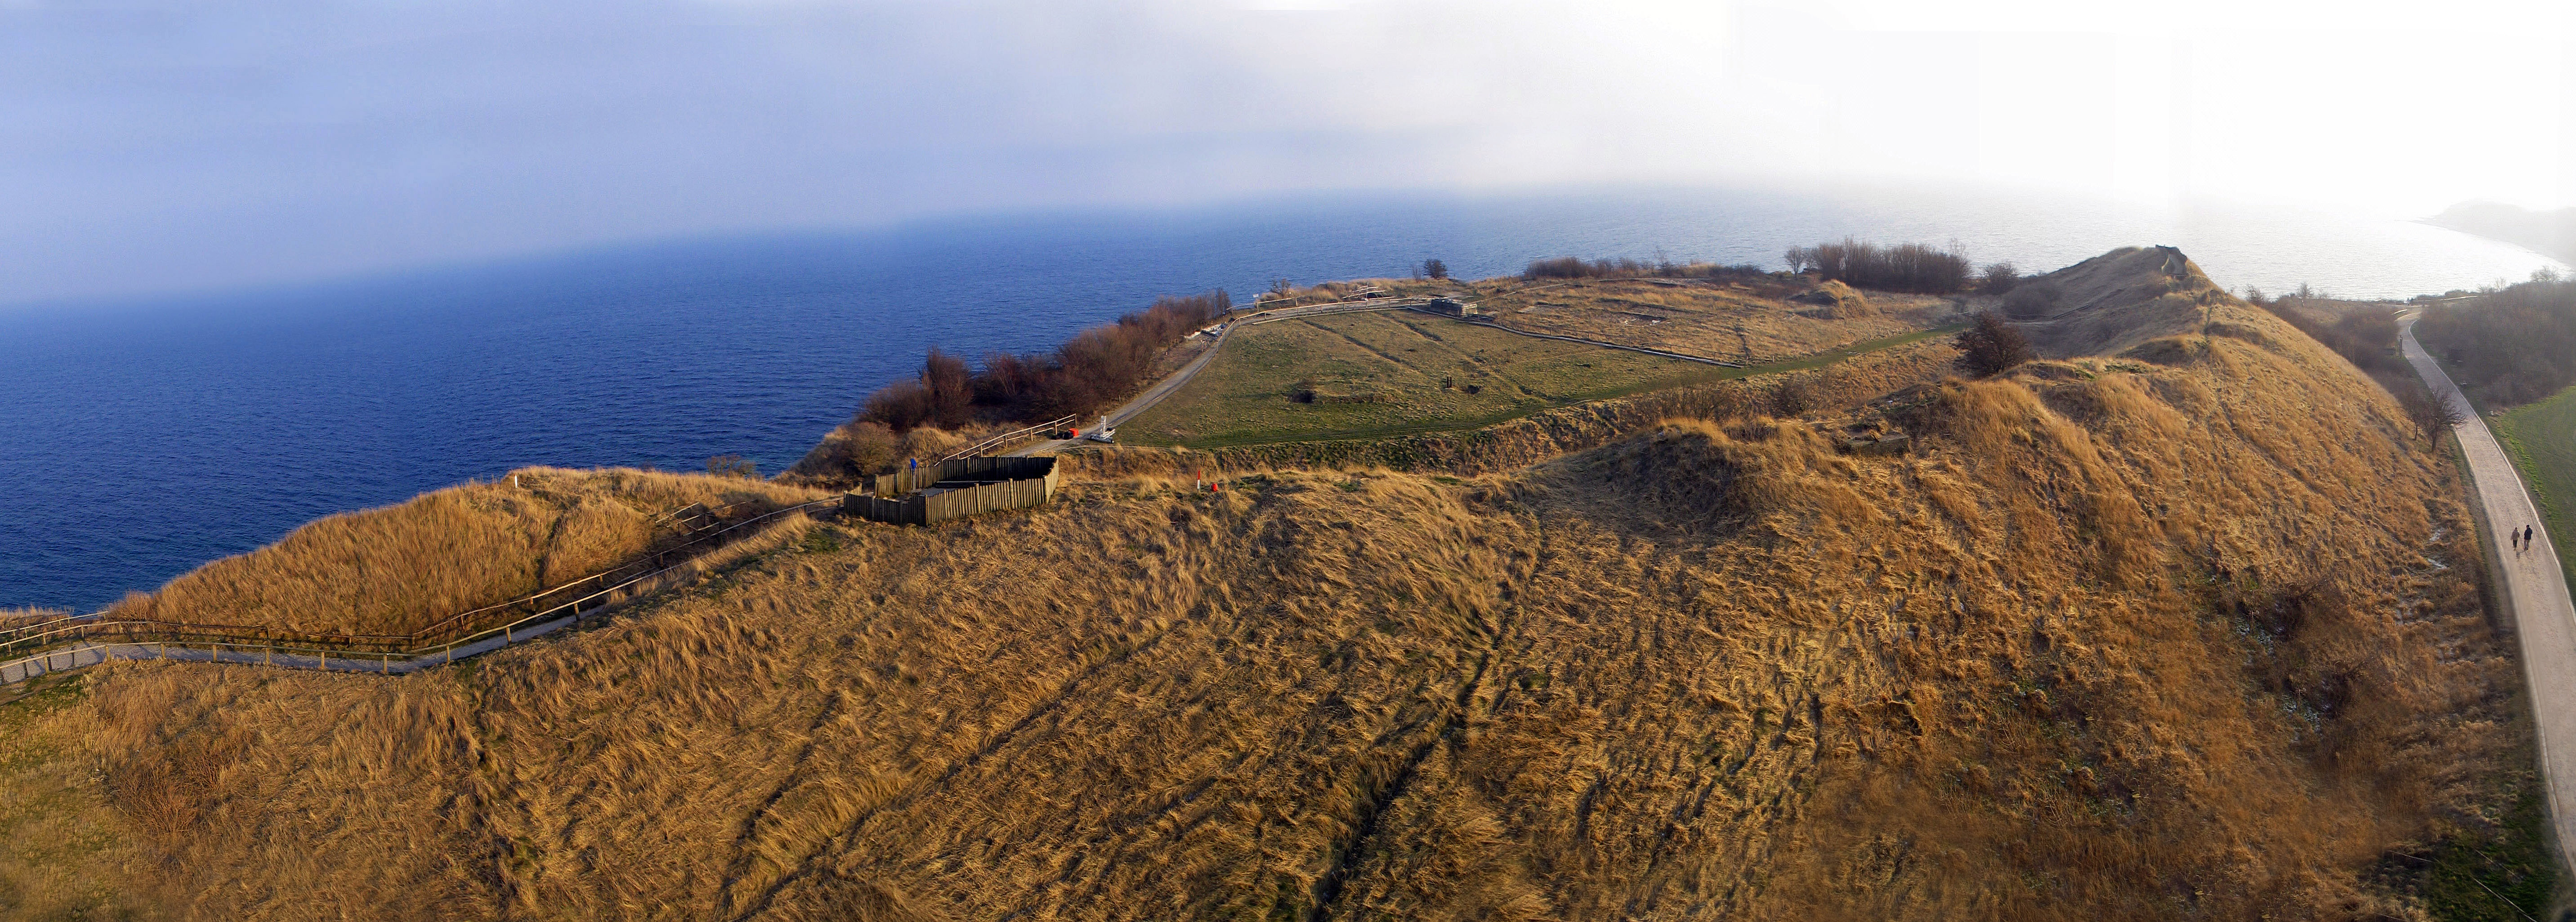 Luftbild mit Blick auf den Burgwall Arkona. Im Hintergrund die Ostsee.